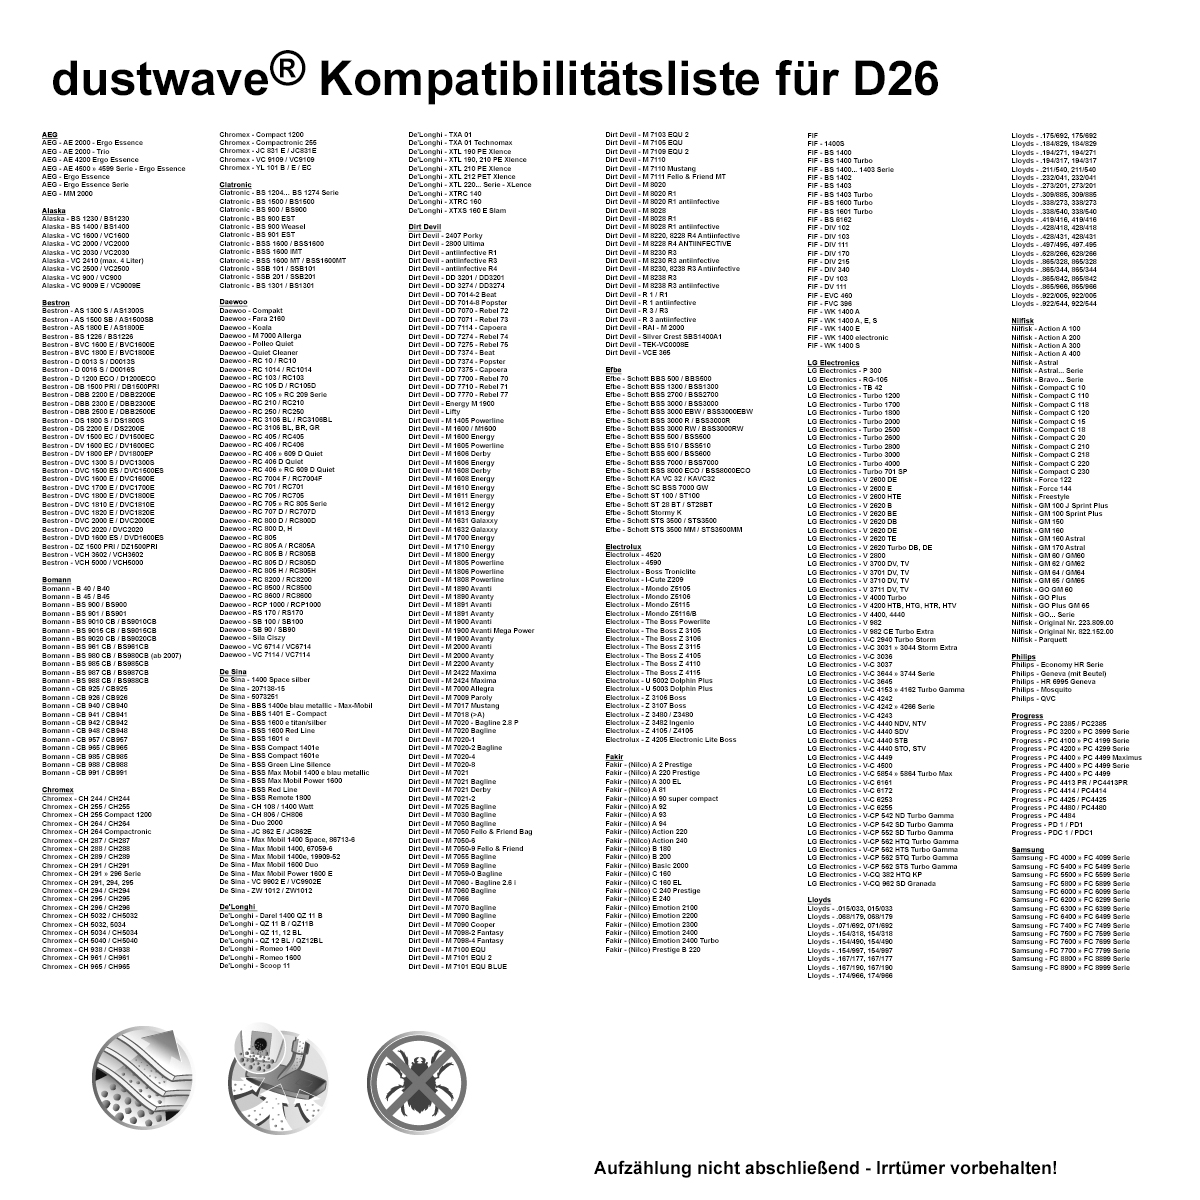 Dustwave® 1 Staubsaugerbeutel für Bomann BS 9010 CB - hocheffizient mit Hygieneverschluss - Made in Germany